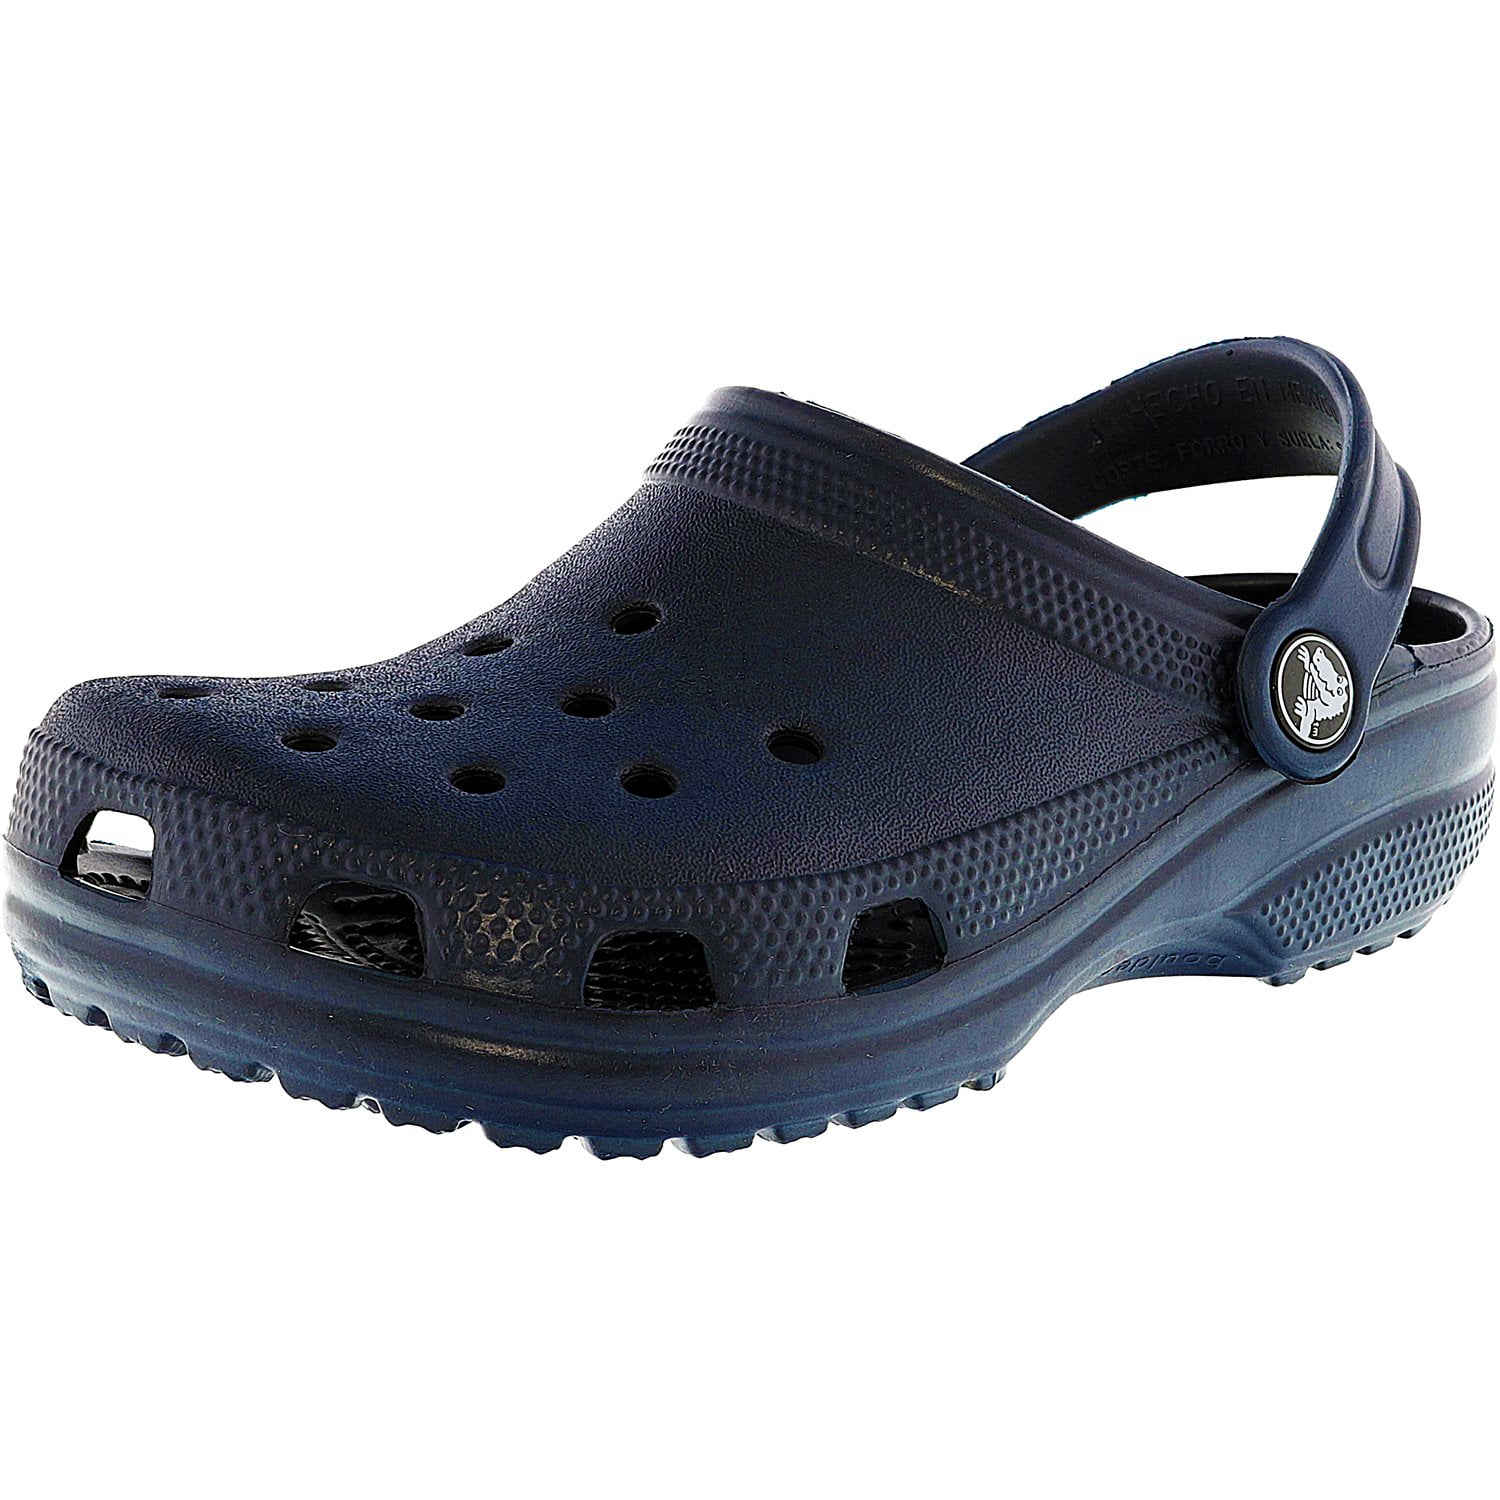 crocs classic clog navy